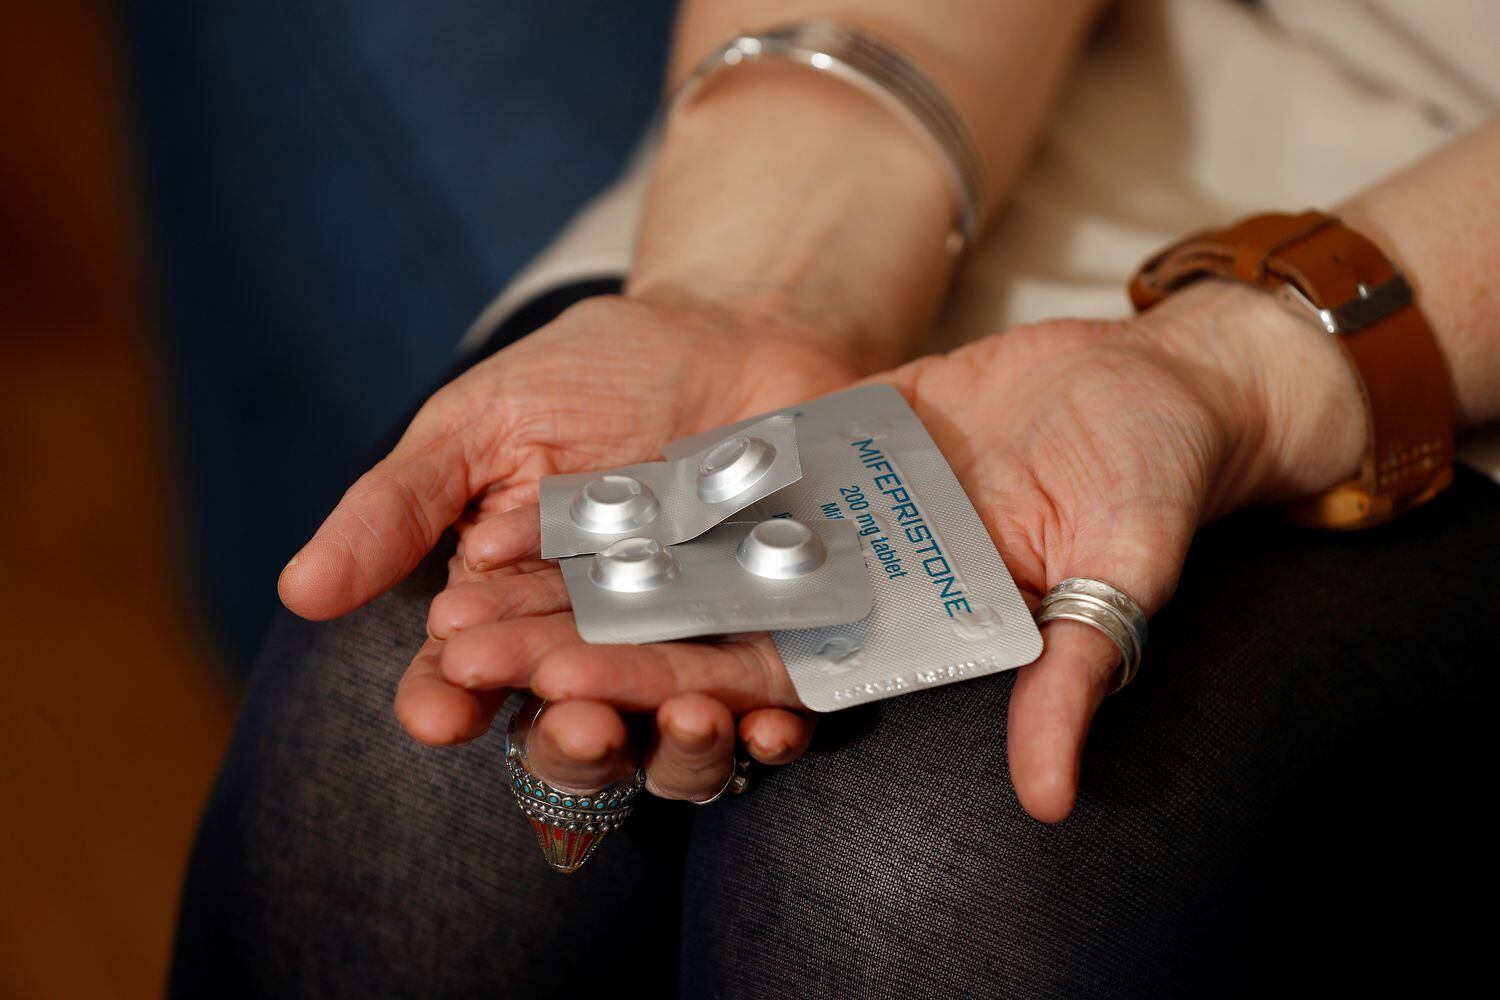 Ativista pró-escolha mostra medicamento considerado seguro às mulheres, mas que está sendo negado na Irlanda do Norte, onde o aborto é legal.